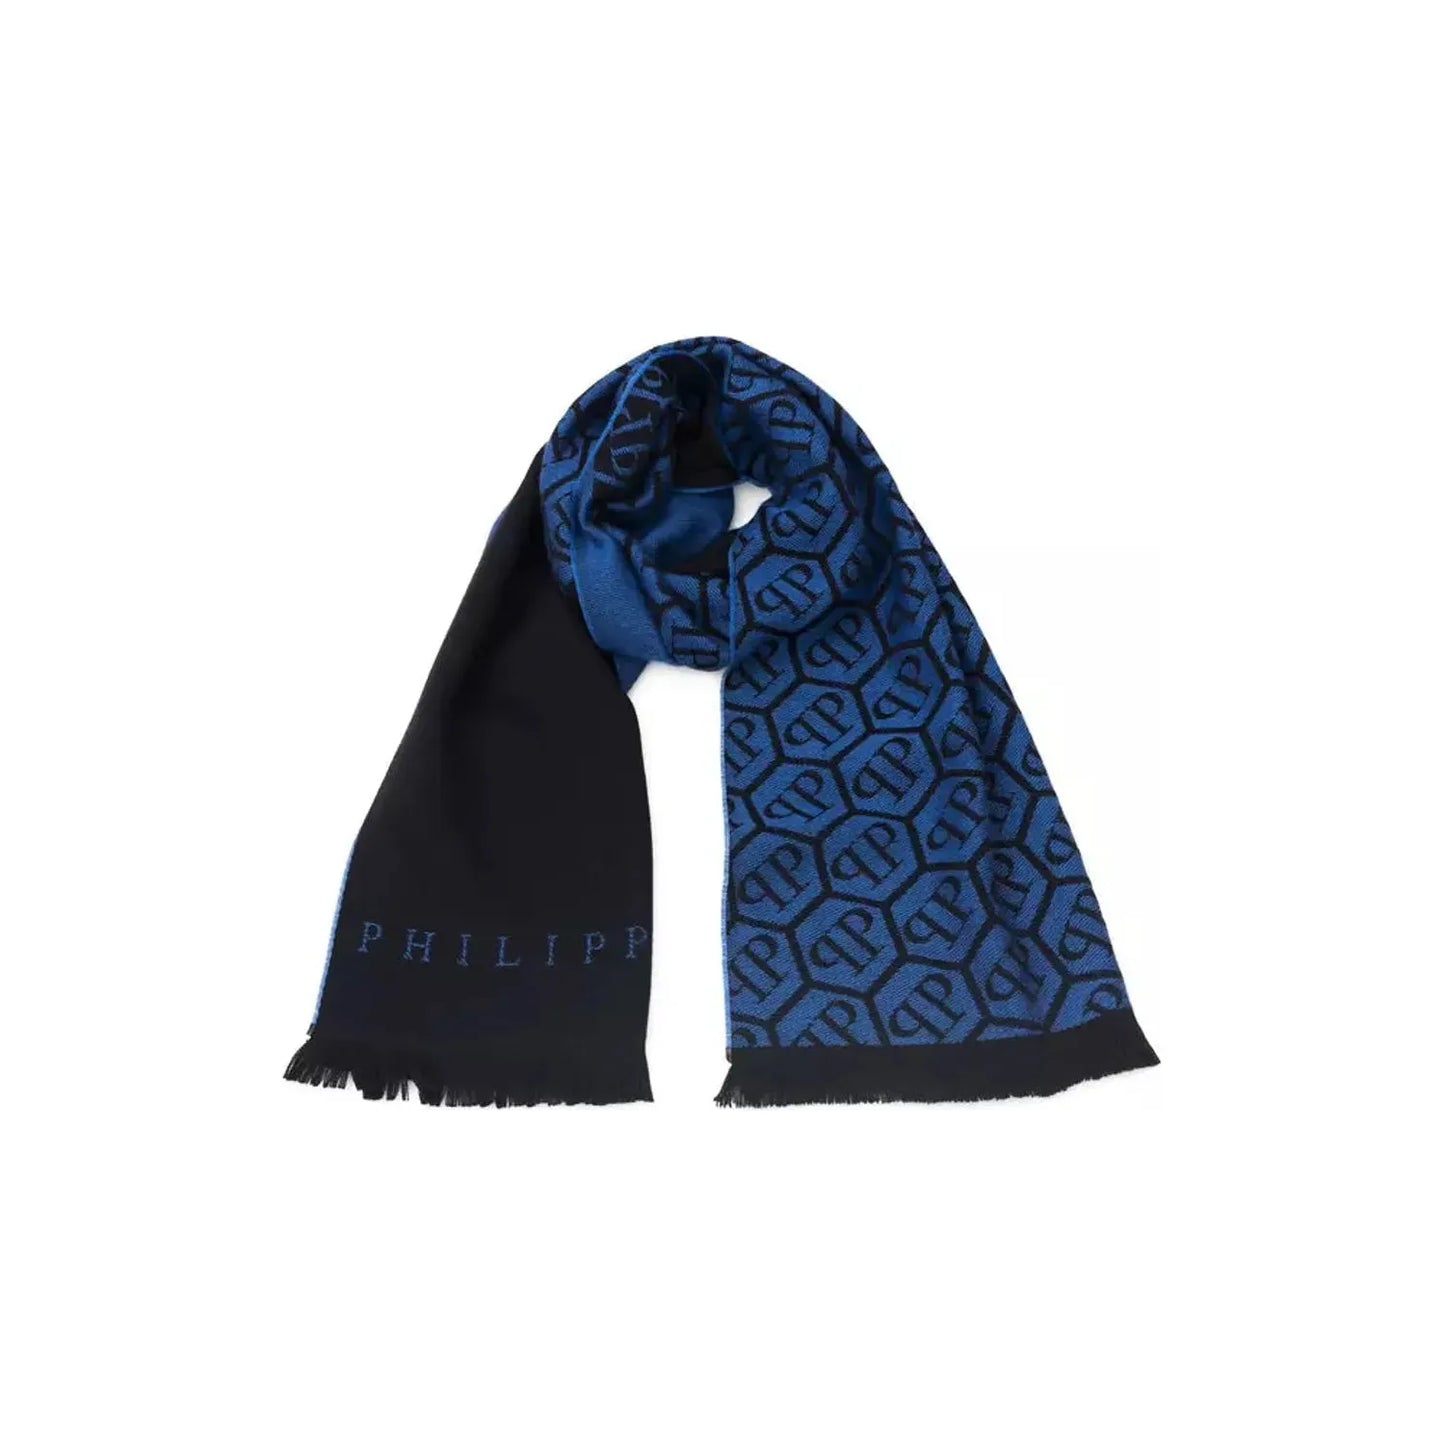 Philipp Plein Chic Monogram Fringed Scarf Wool Wrap Shawl Scarf blue-wool-scarf-3 product-22243-549442862-23-0aa9cd0a-23d.webp